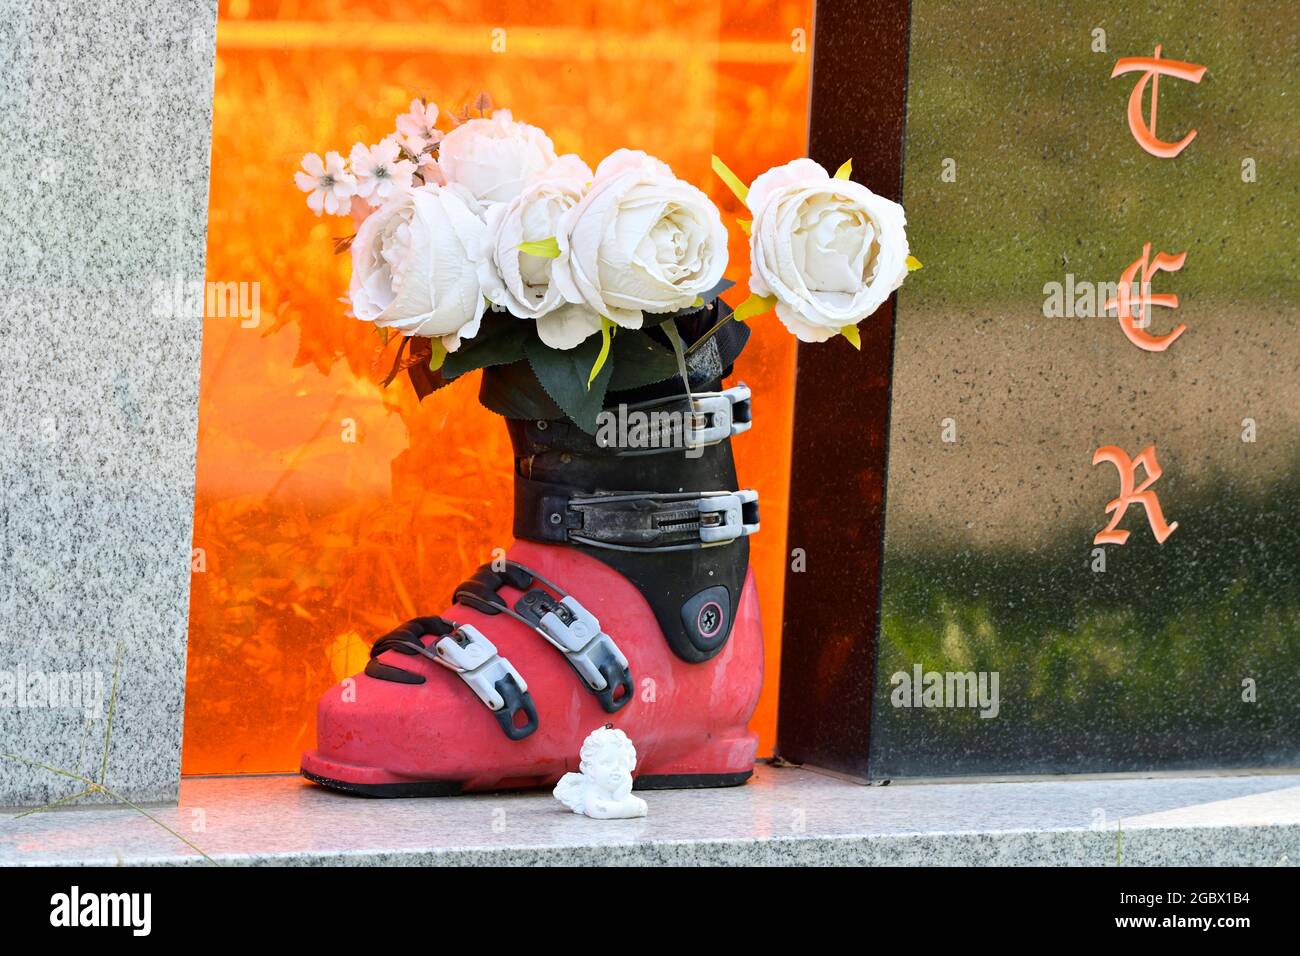 Vienne, Autriche. Cimetière central de Vienne. Chaussure de ski avec fleurs en plastique sur une pierre tombale Banque D'Images